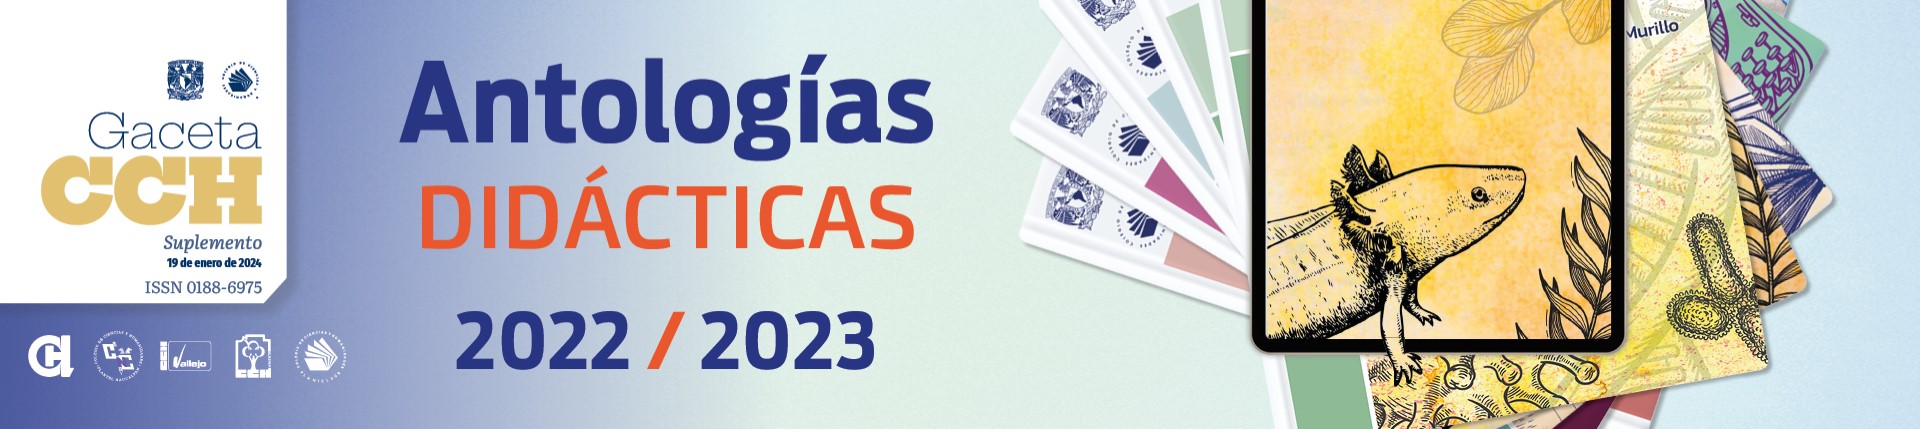 Suplemento Antologías 2022/2023